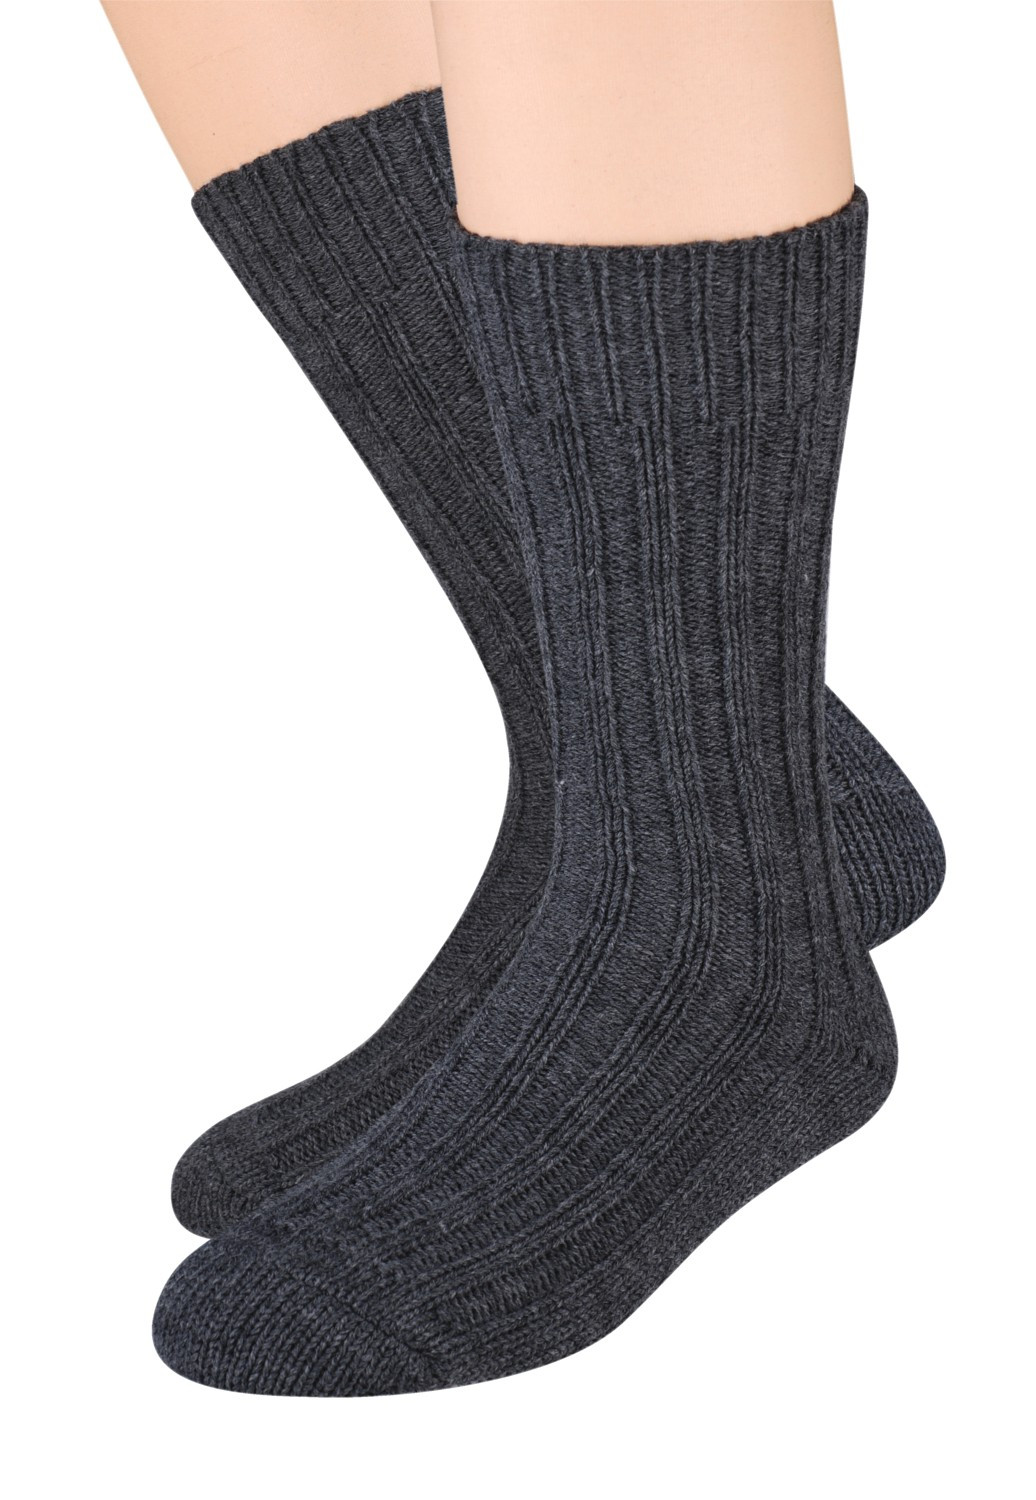 Pánské vlněné ponožky Steven art.085 41-46 černá 44-46